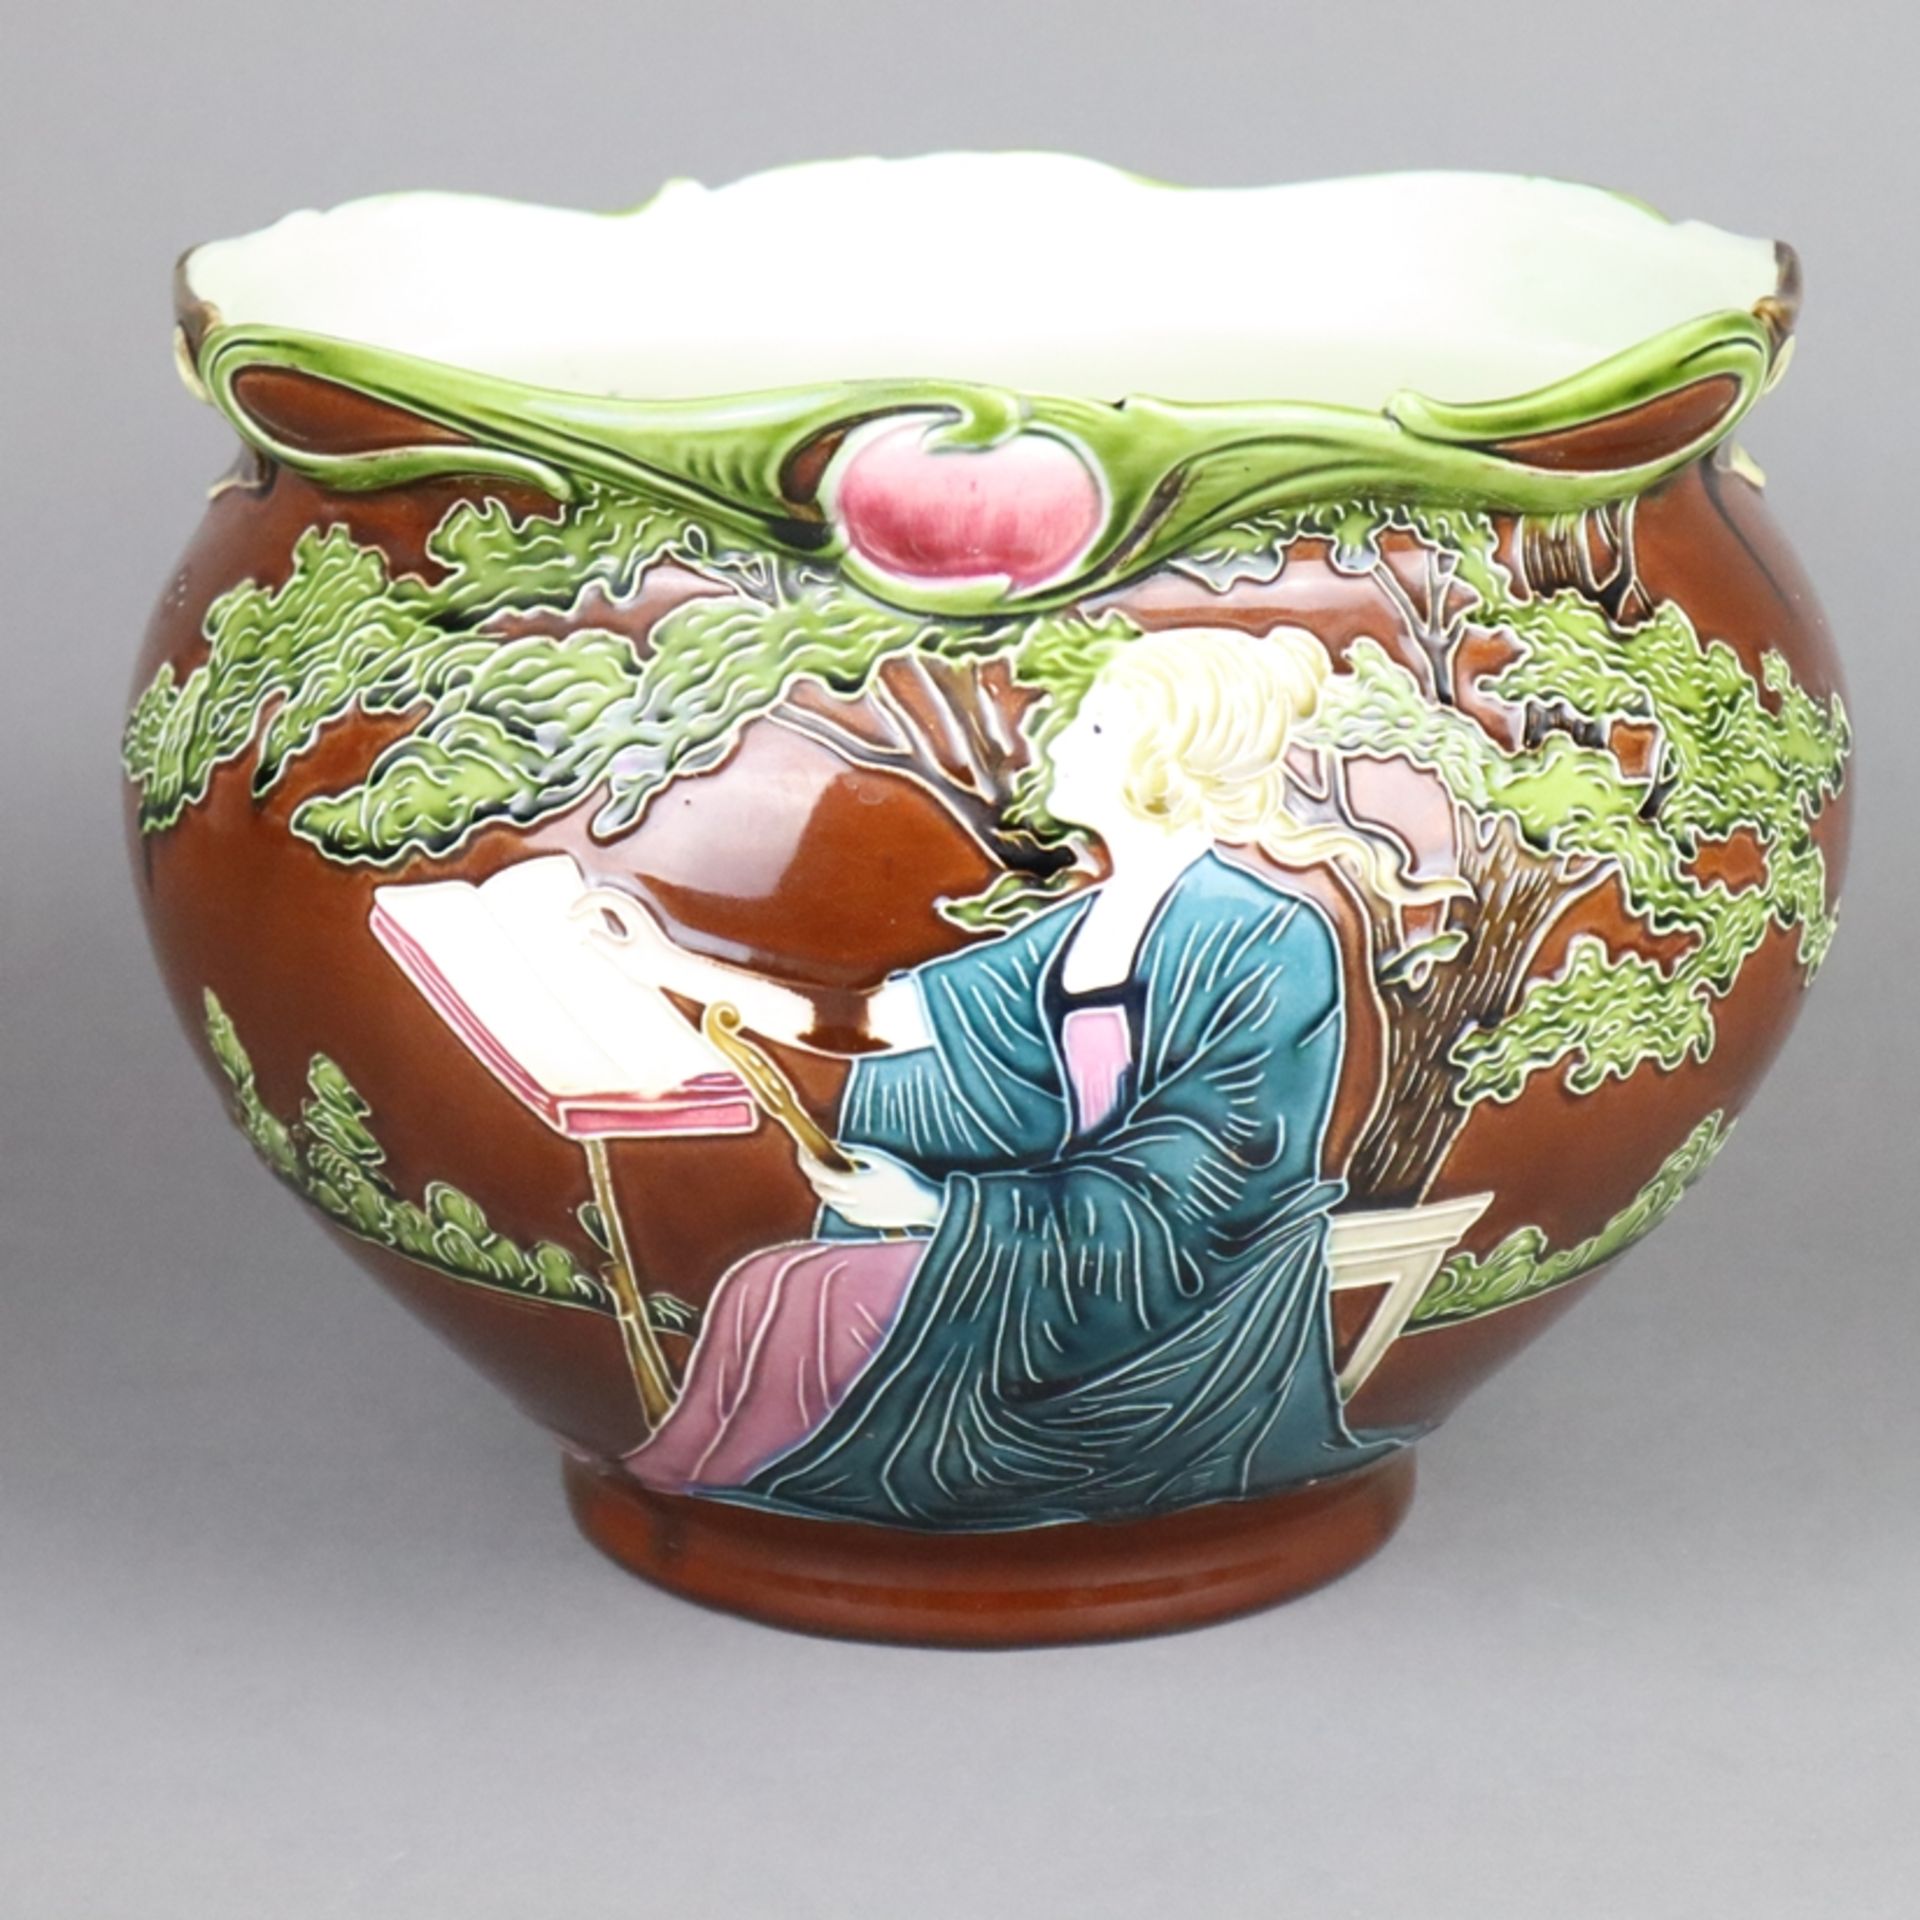 Jugendstil-Cachepot - Julius Dressler, Biela bei Bodenbach, um 1900, Keramik, braun glasiert, polyc